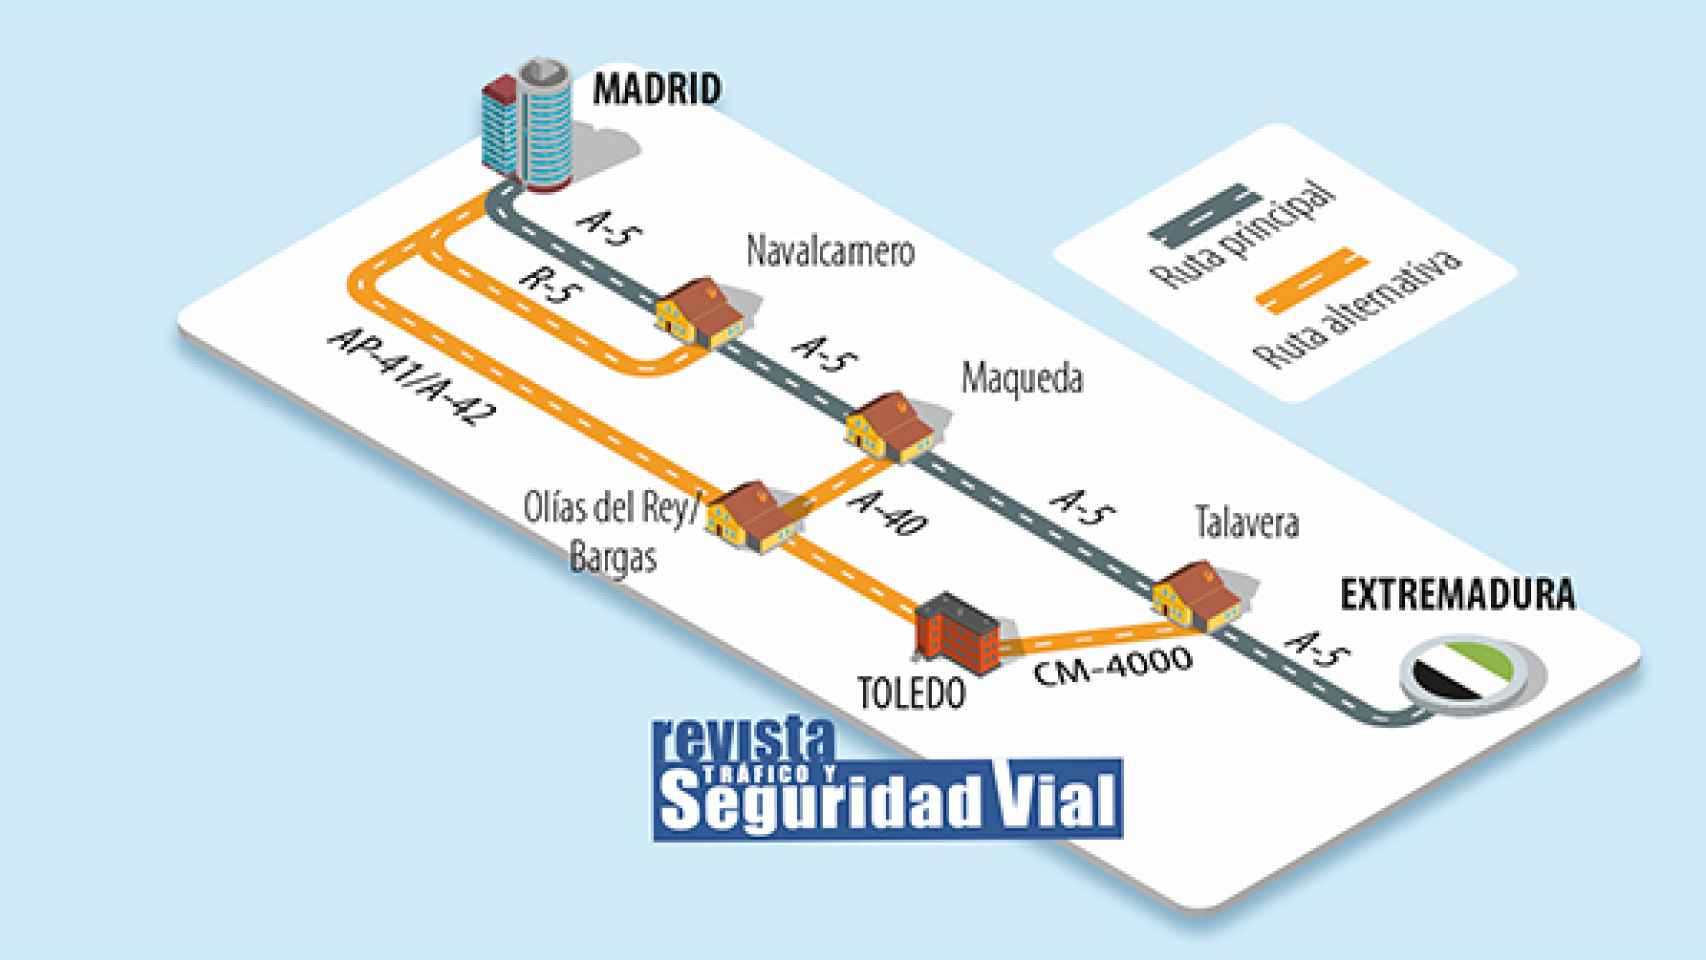 Alternativa trayecto Extremadura-Madrid